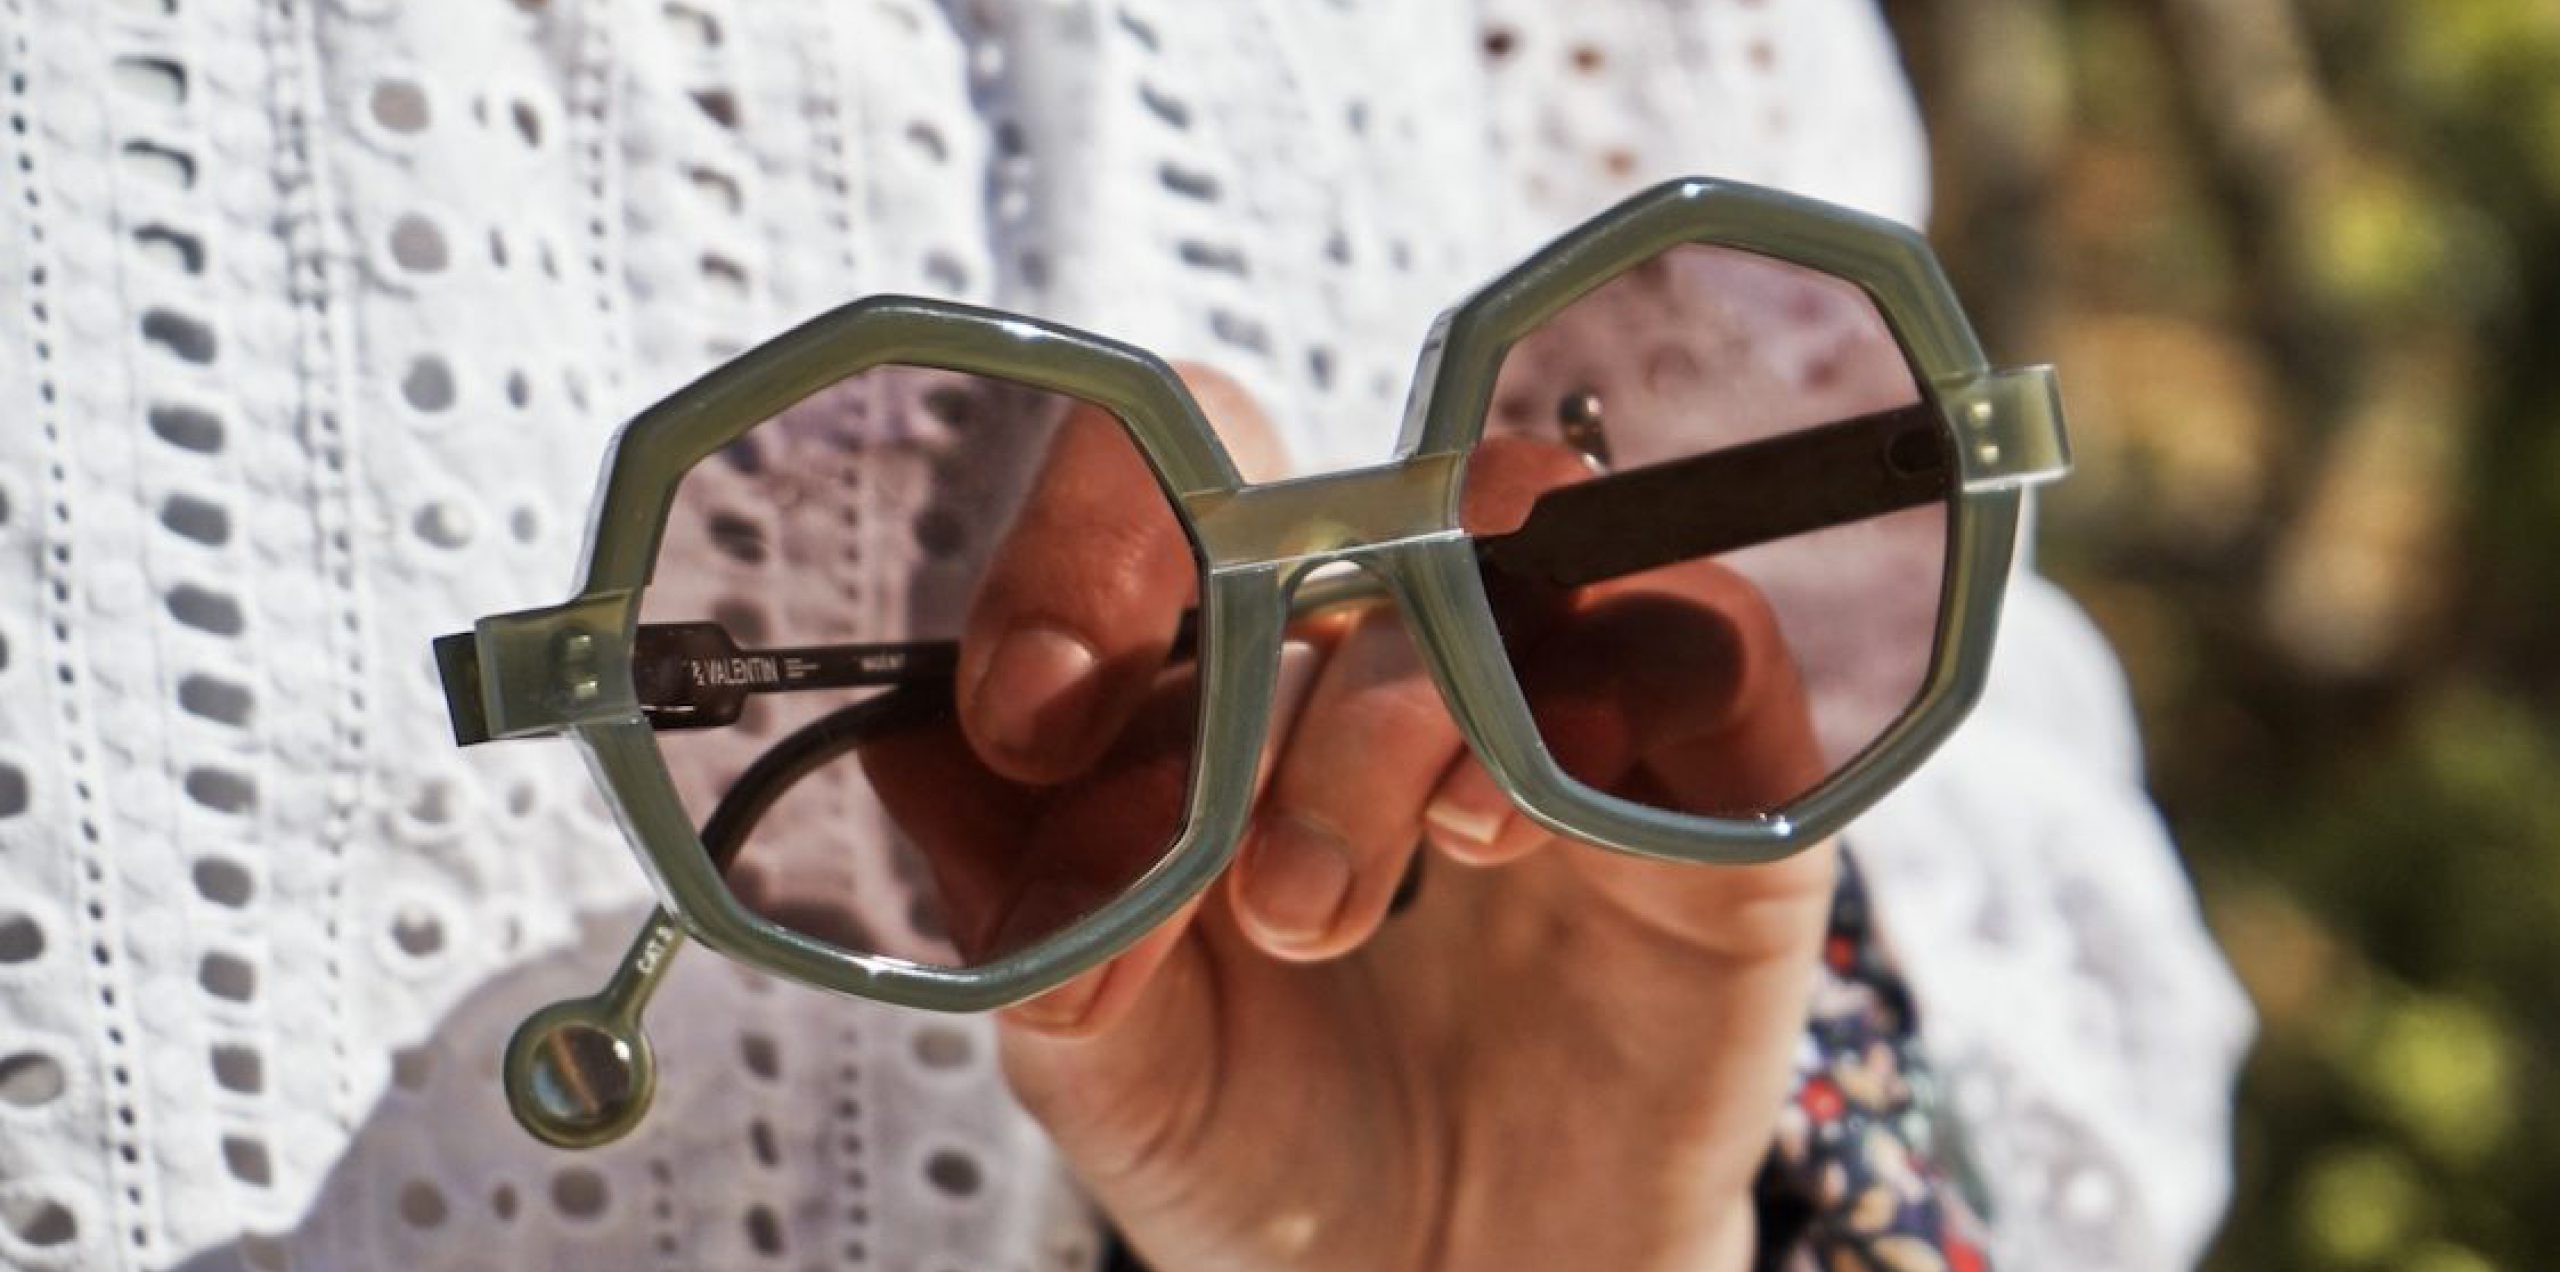 Comment choisir des lunettes de soleil pour bien protéger ses yeux ?